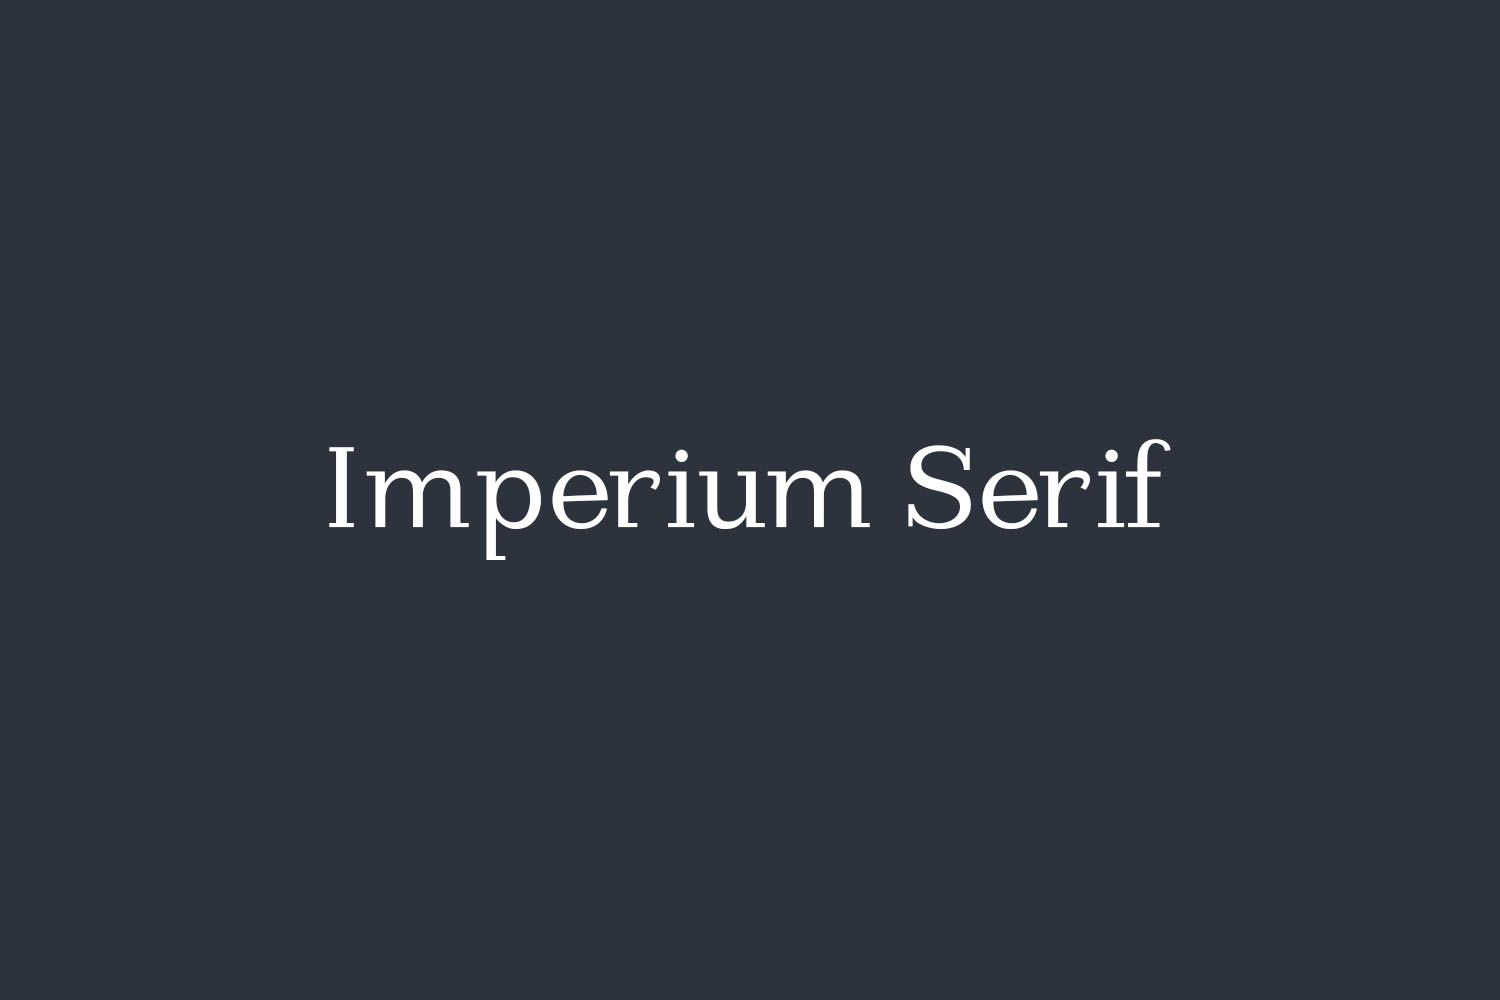 Imperium Serif Free Font